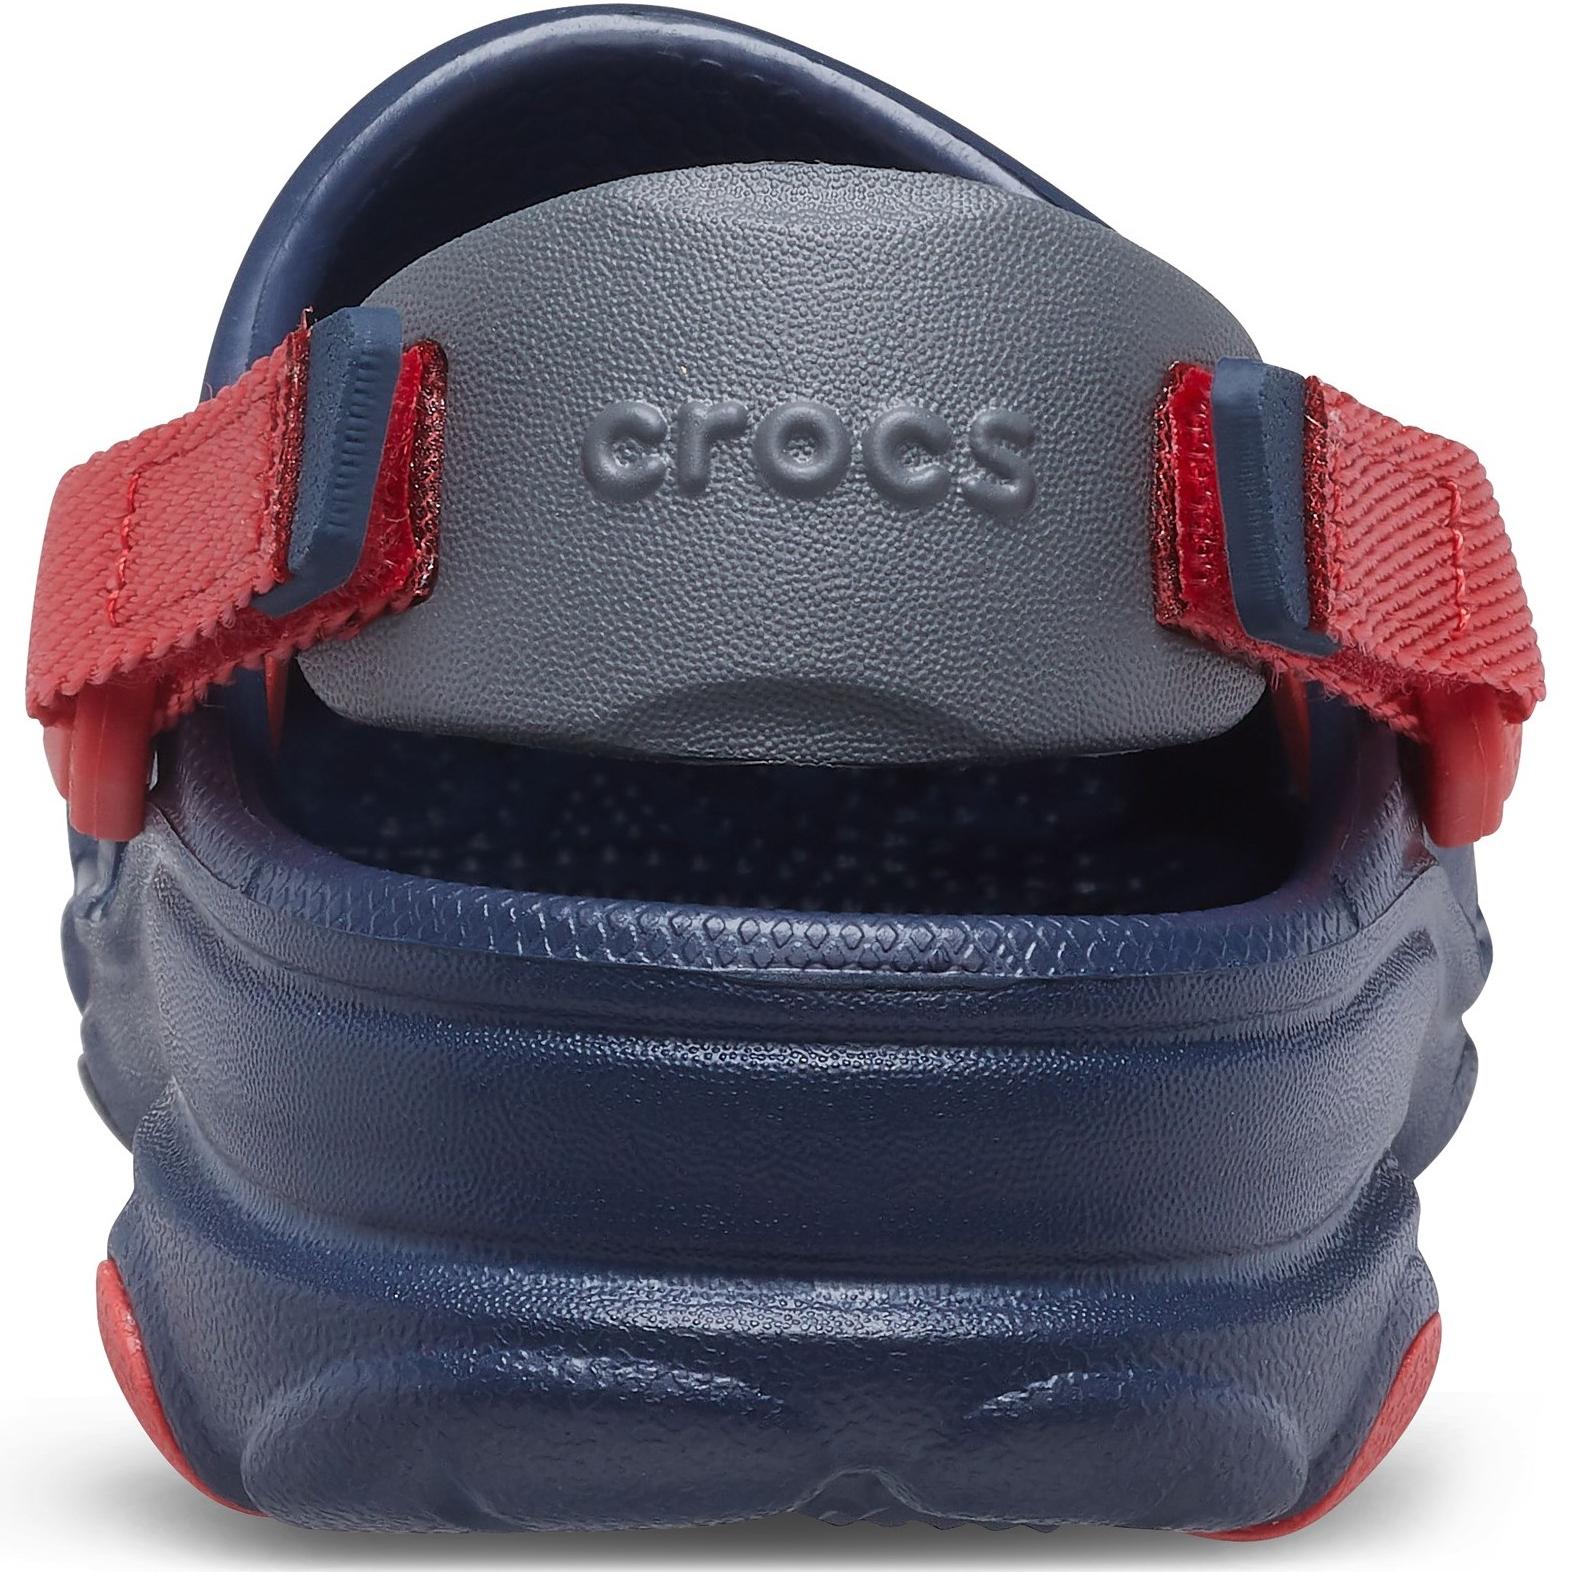 Crocs Classic All-Terrain Clog Sandals